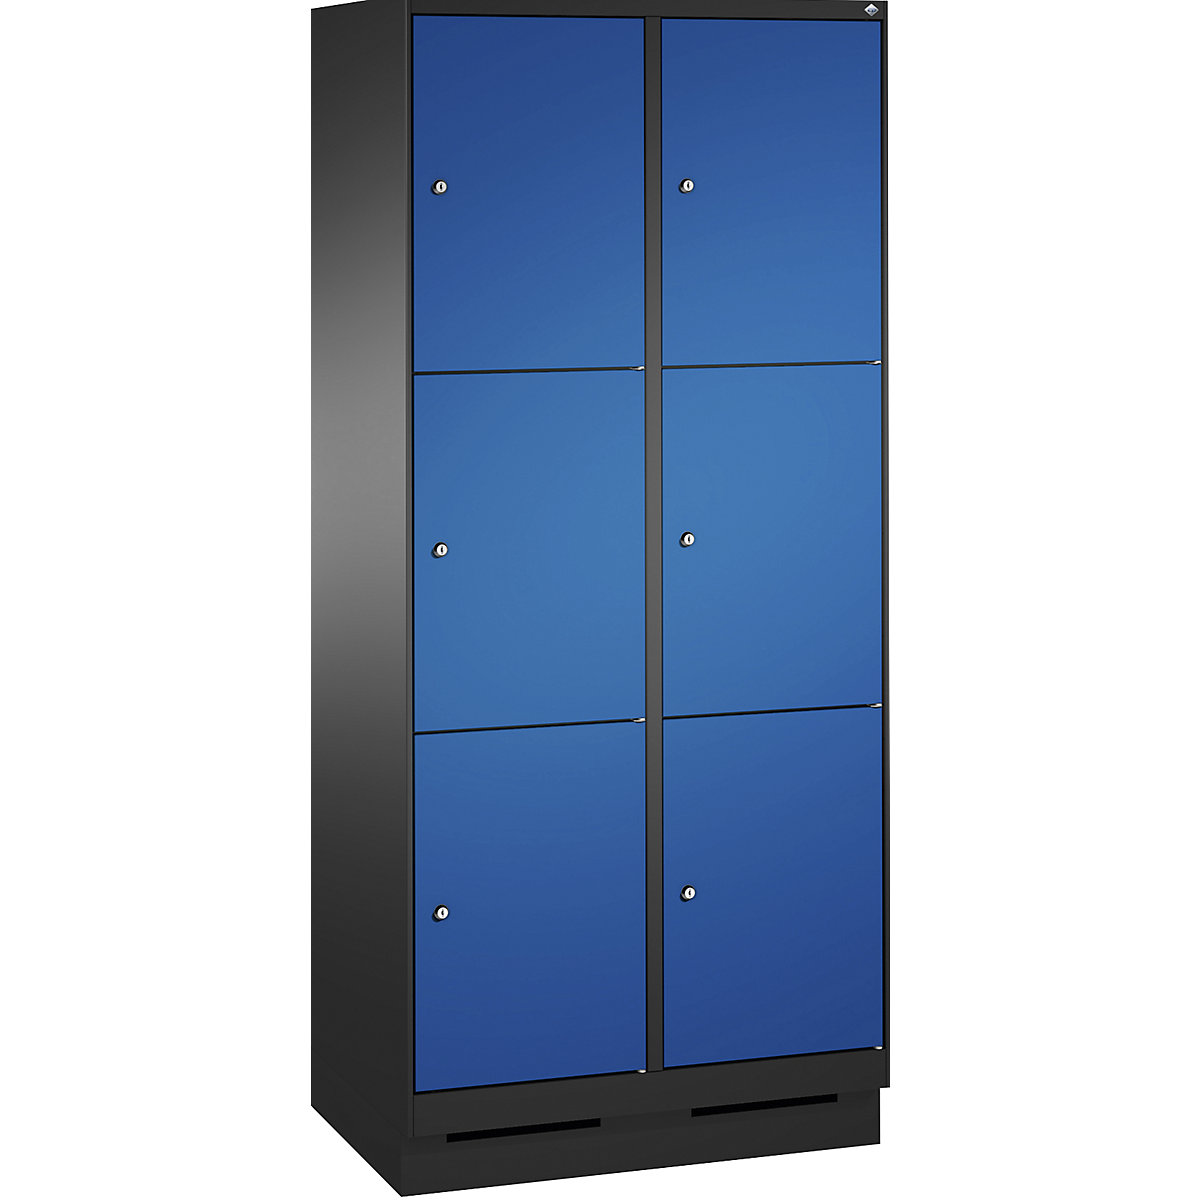 Armoire à casiers sur socle EVOLO – C+P, 2 compartiments, 3 casiers chacun, largeur compartiments 400 mm, gris noir / bleu gentiane-3